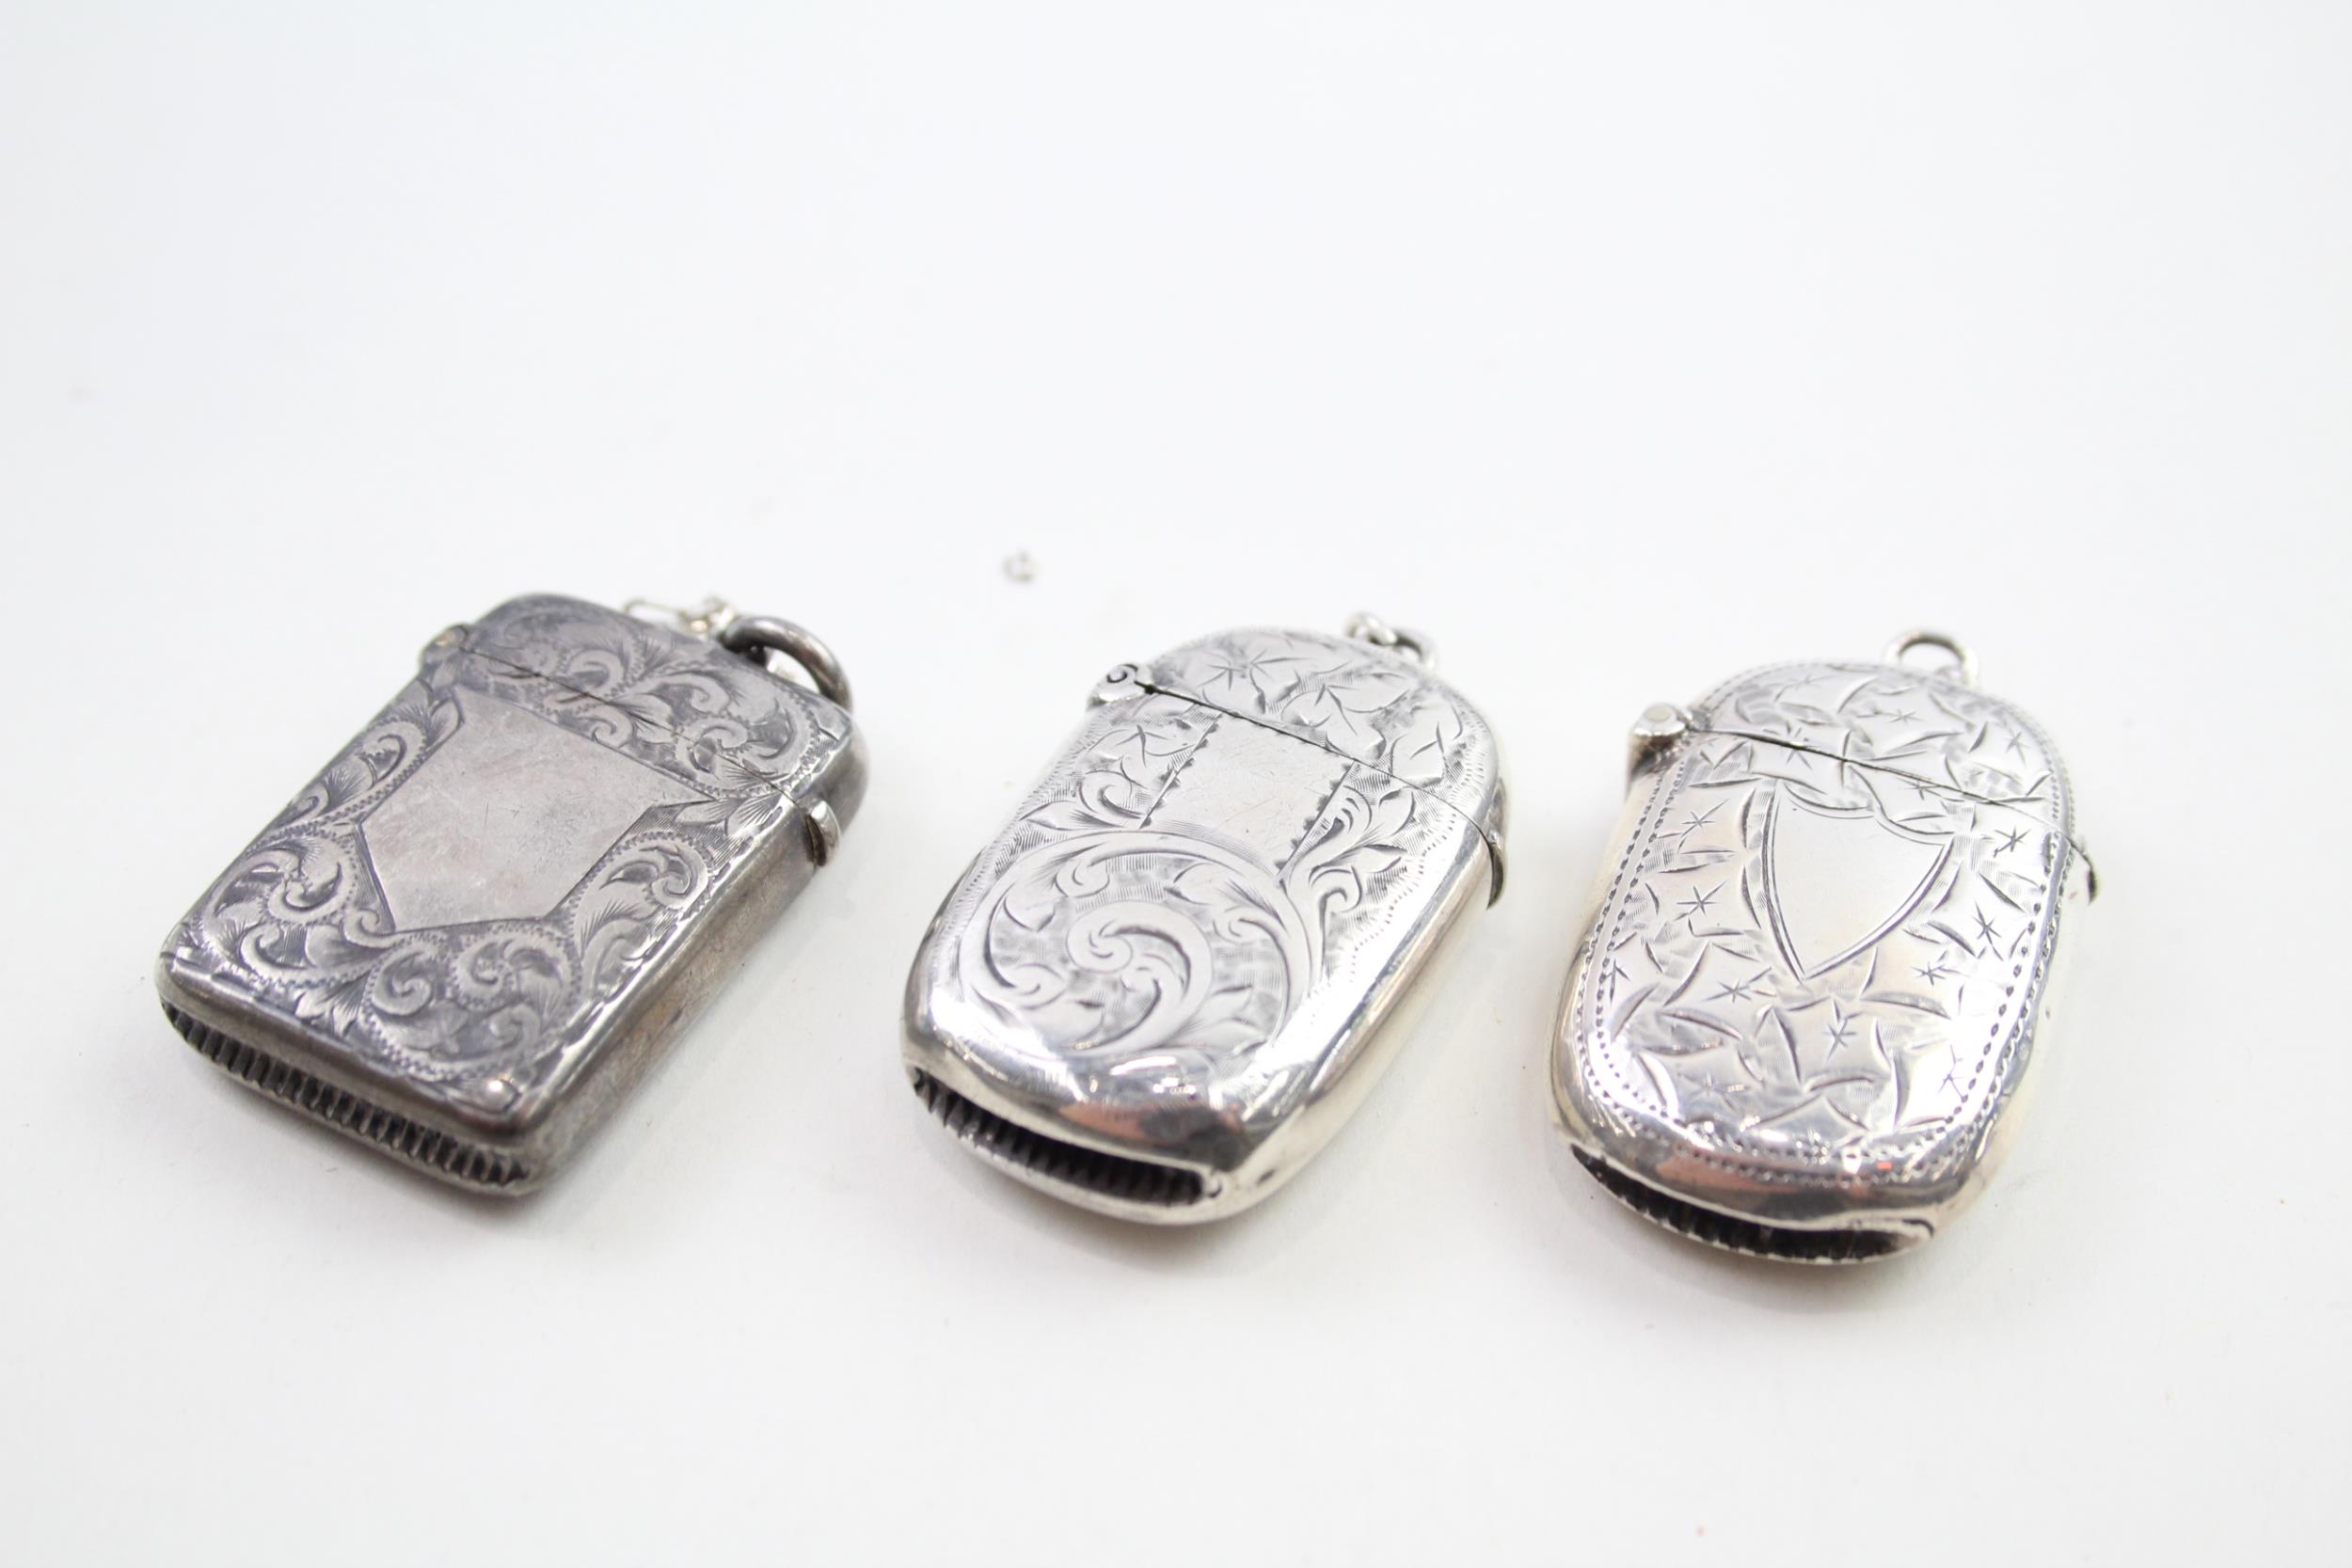 3 x Antique Hallmarked .925 Sterling Silver Vesta Cases Inc Victorian Etc (49g) - In antique